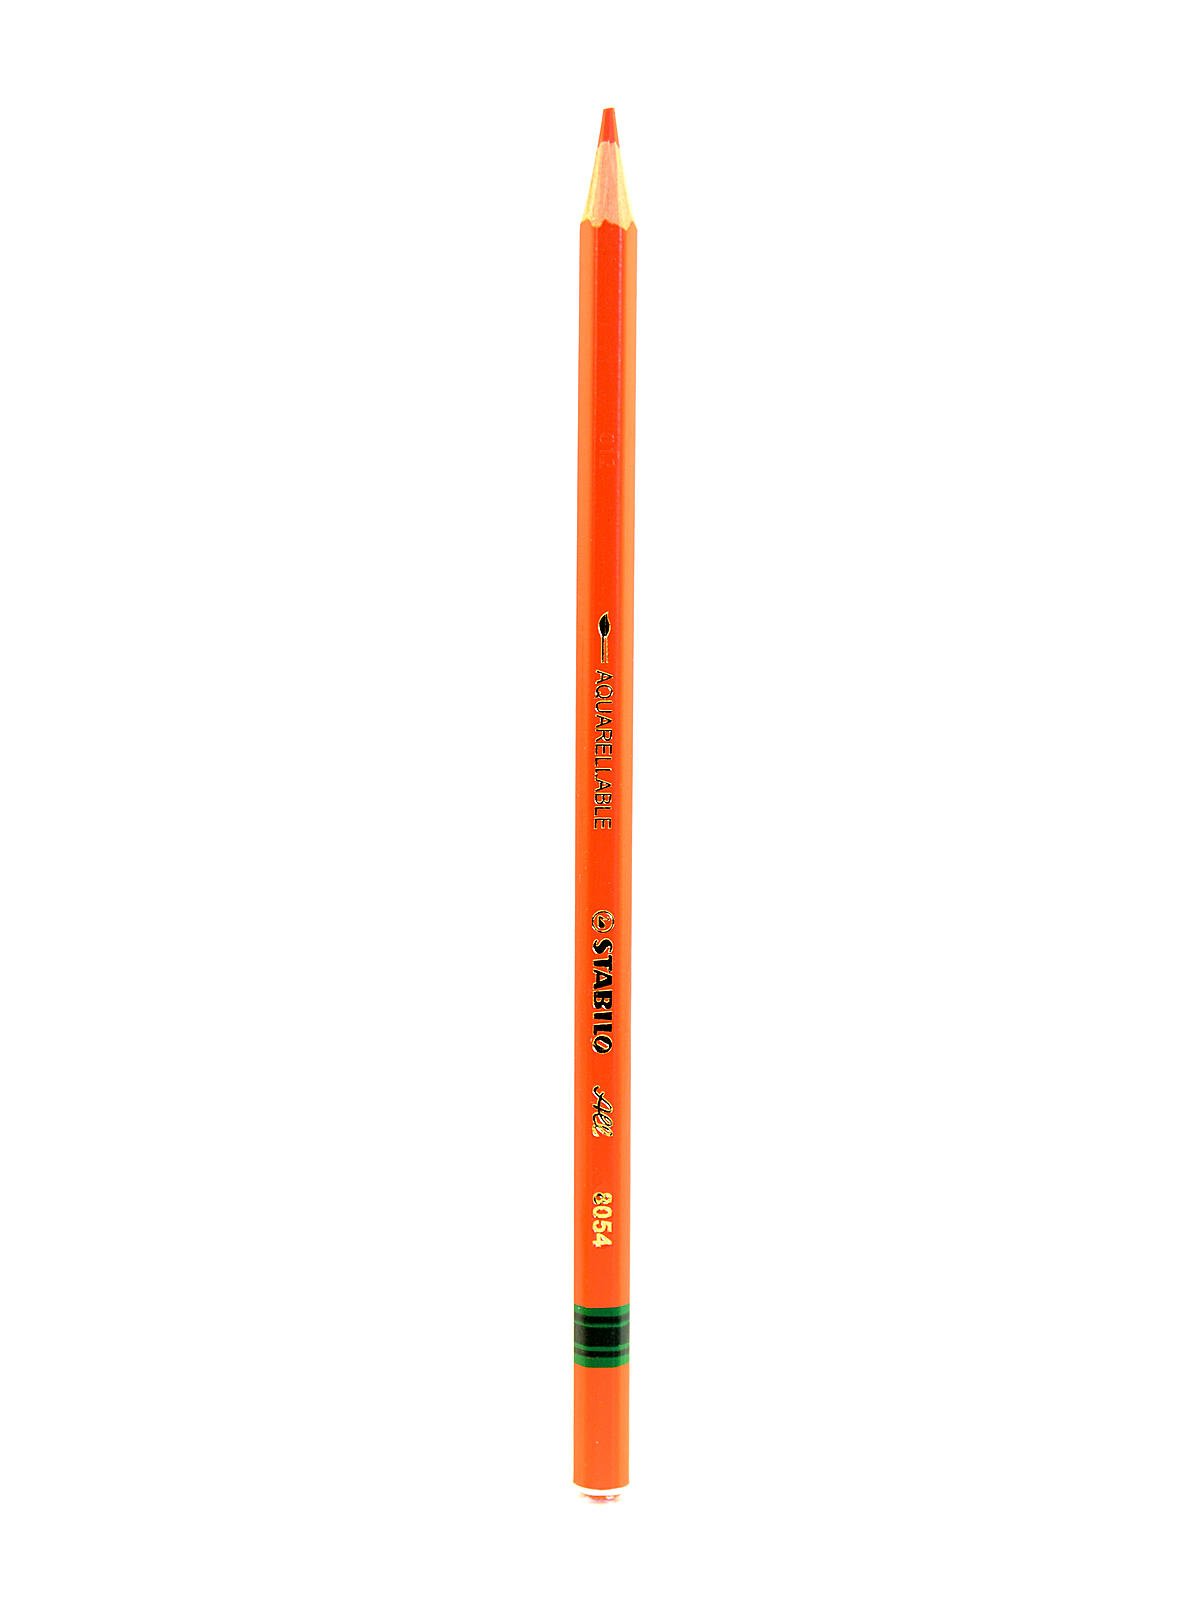 All STABILO colored pencils